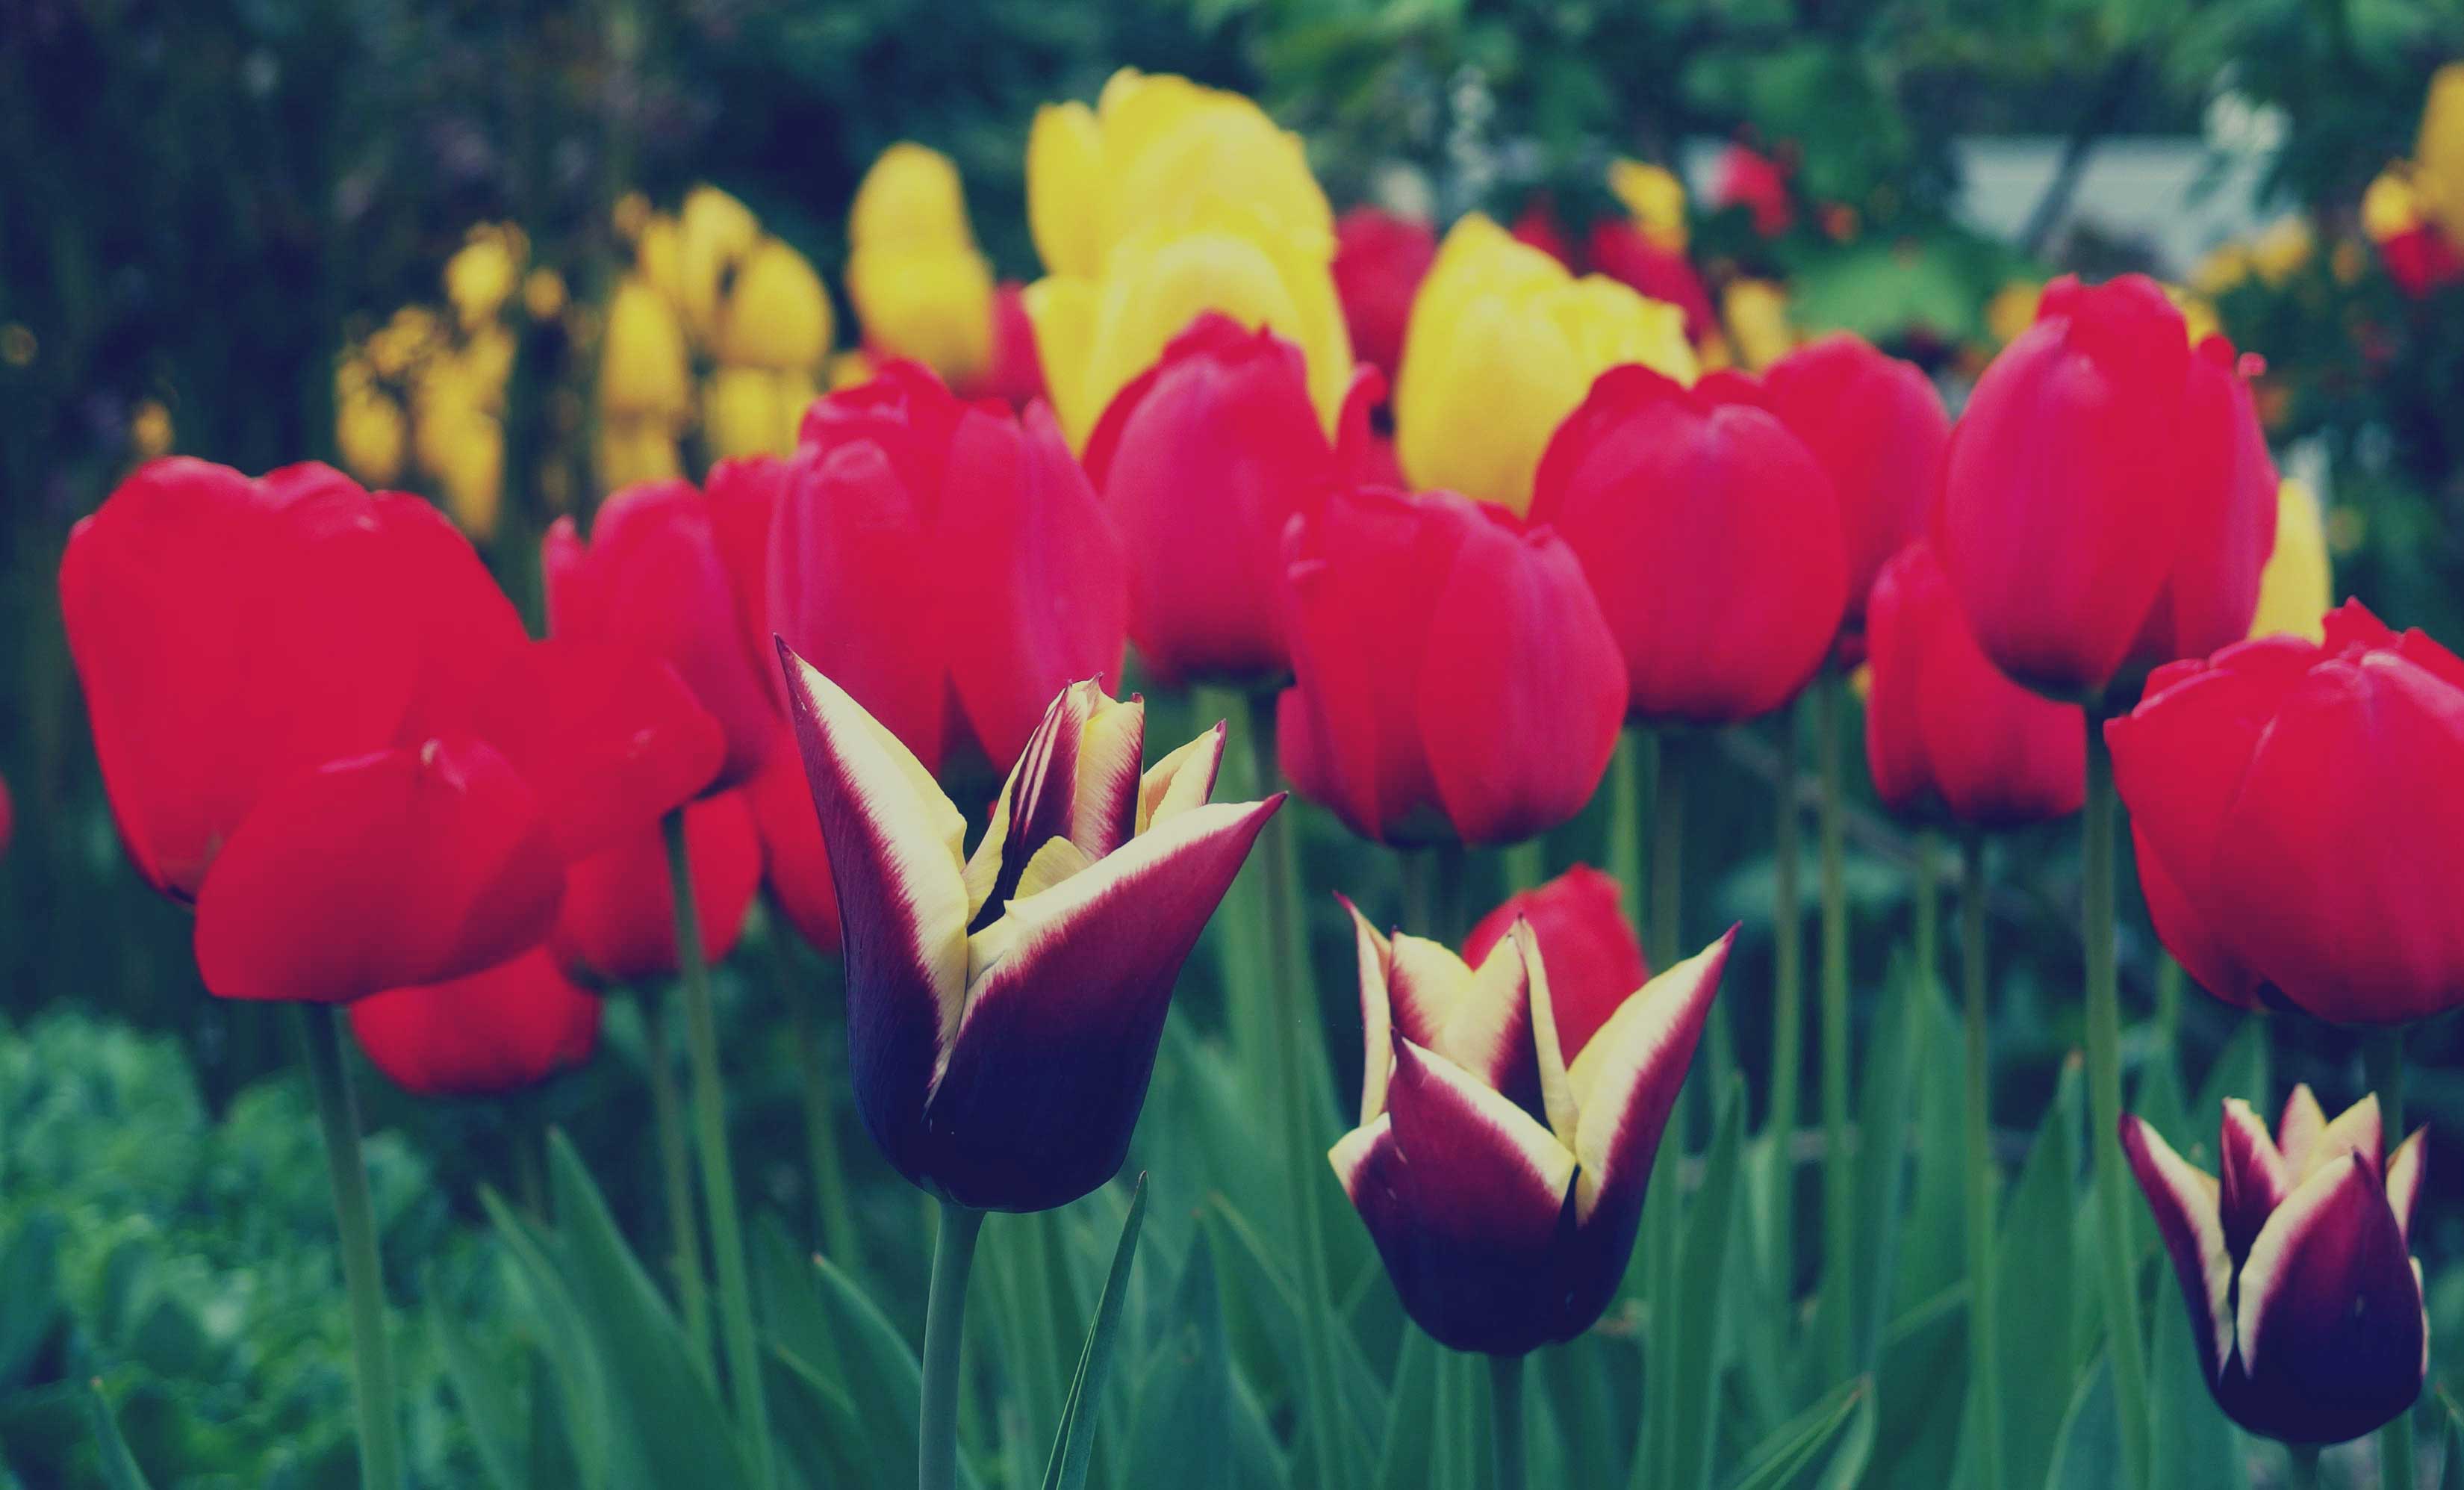 Free Image: Tulips | Libreshot Public Domain Photos